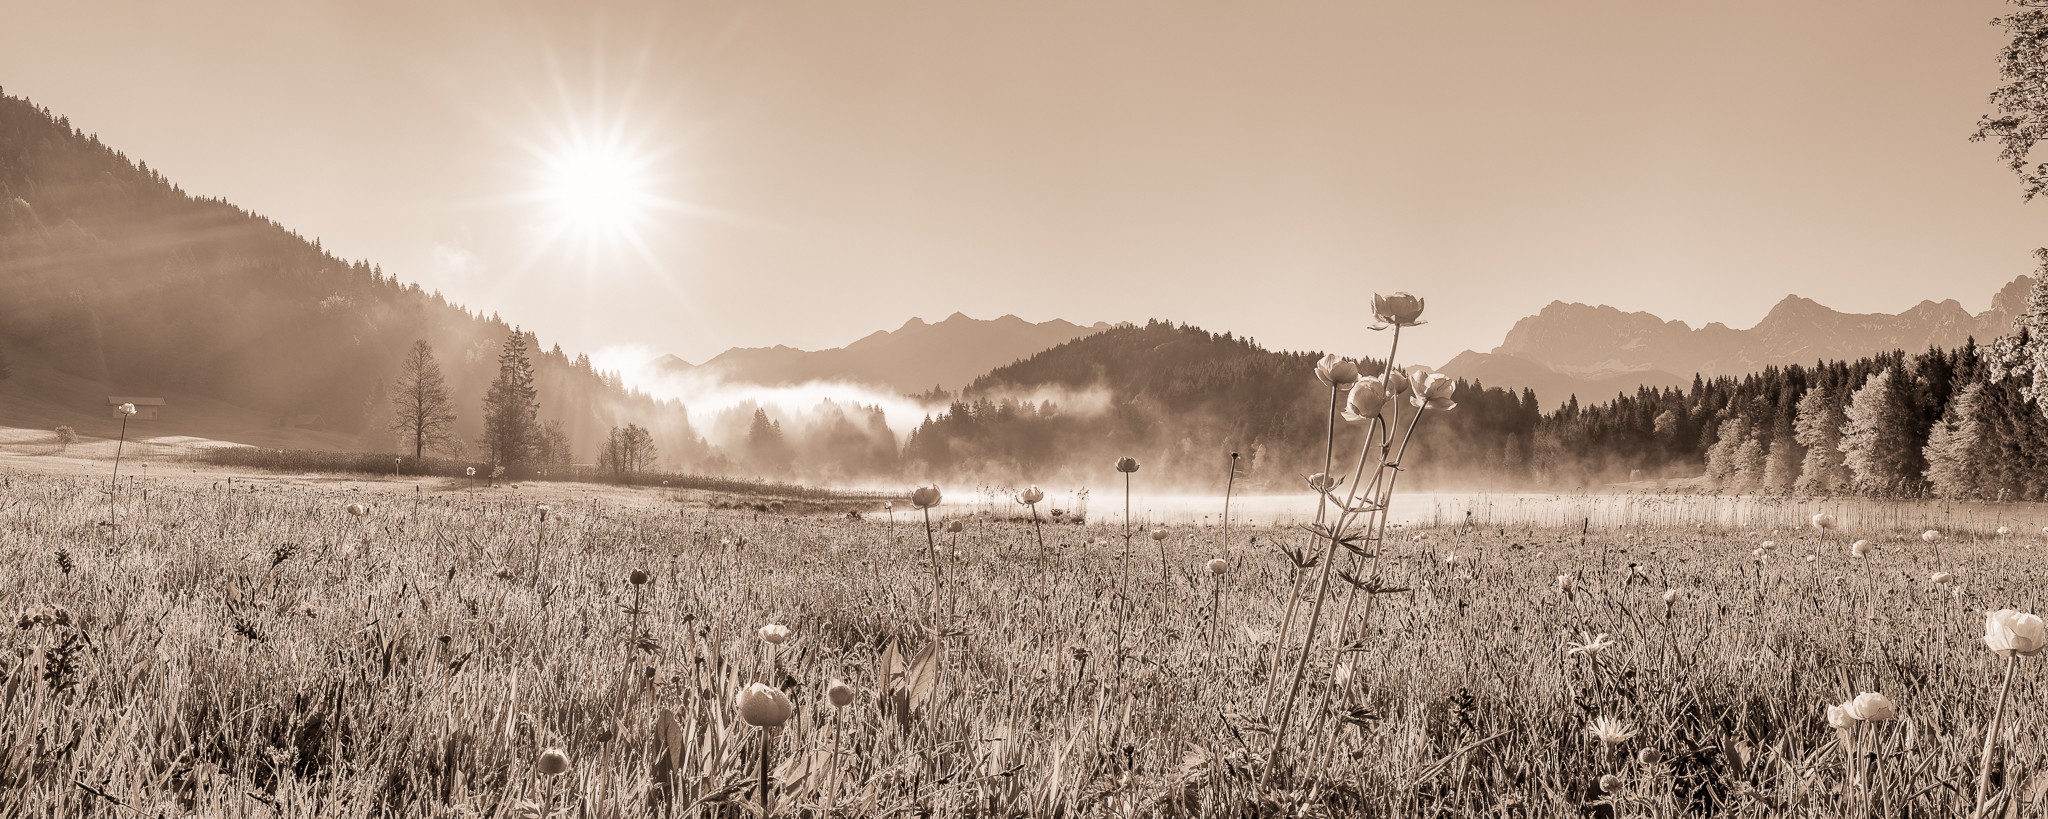 Früh am Morgen bei Sonnenaufgang am Geroldsee - SEPIA. Die Nebelschwaden verziehen sich und die Tropfen vom Morgentau hängen noch an den Blumen und Gräsern.